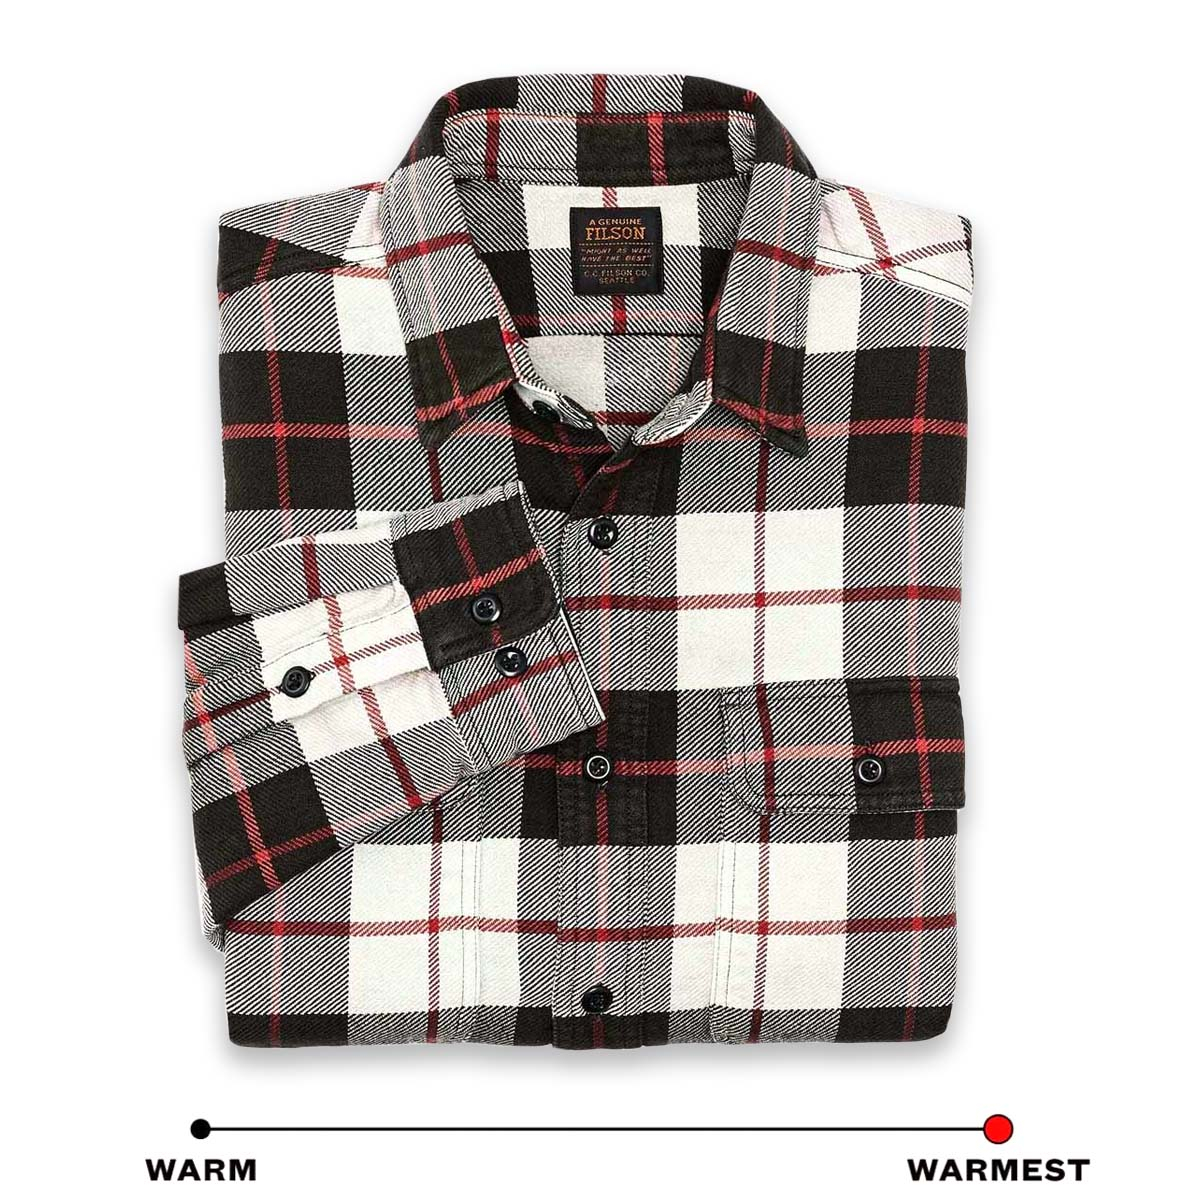 Filson Vintage Flannel Work Shirt Natural/Charcoal, gemaakt van dik en ademend katoenflanel, ideaal voor koud weer